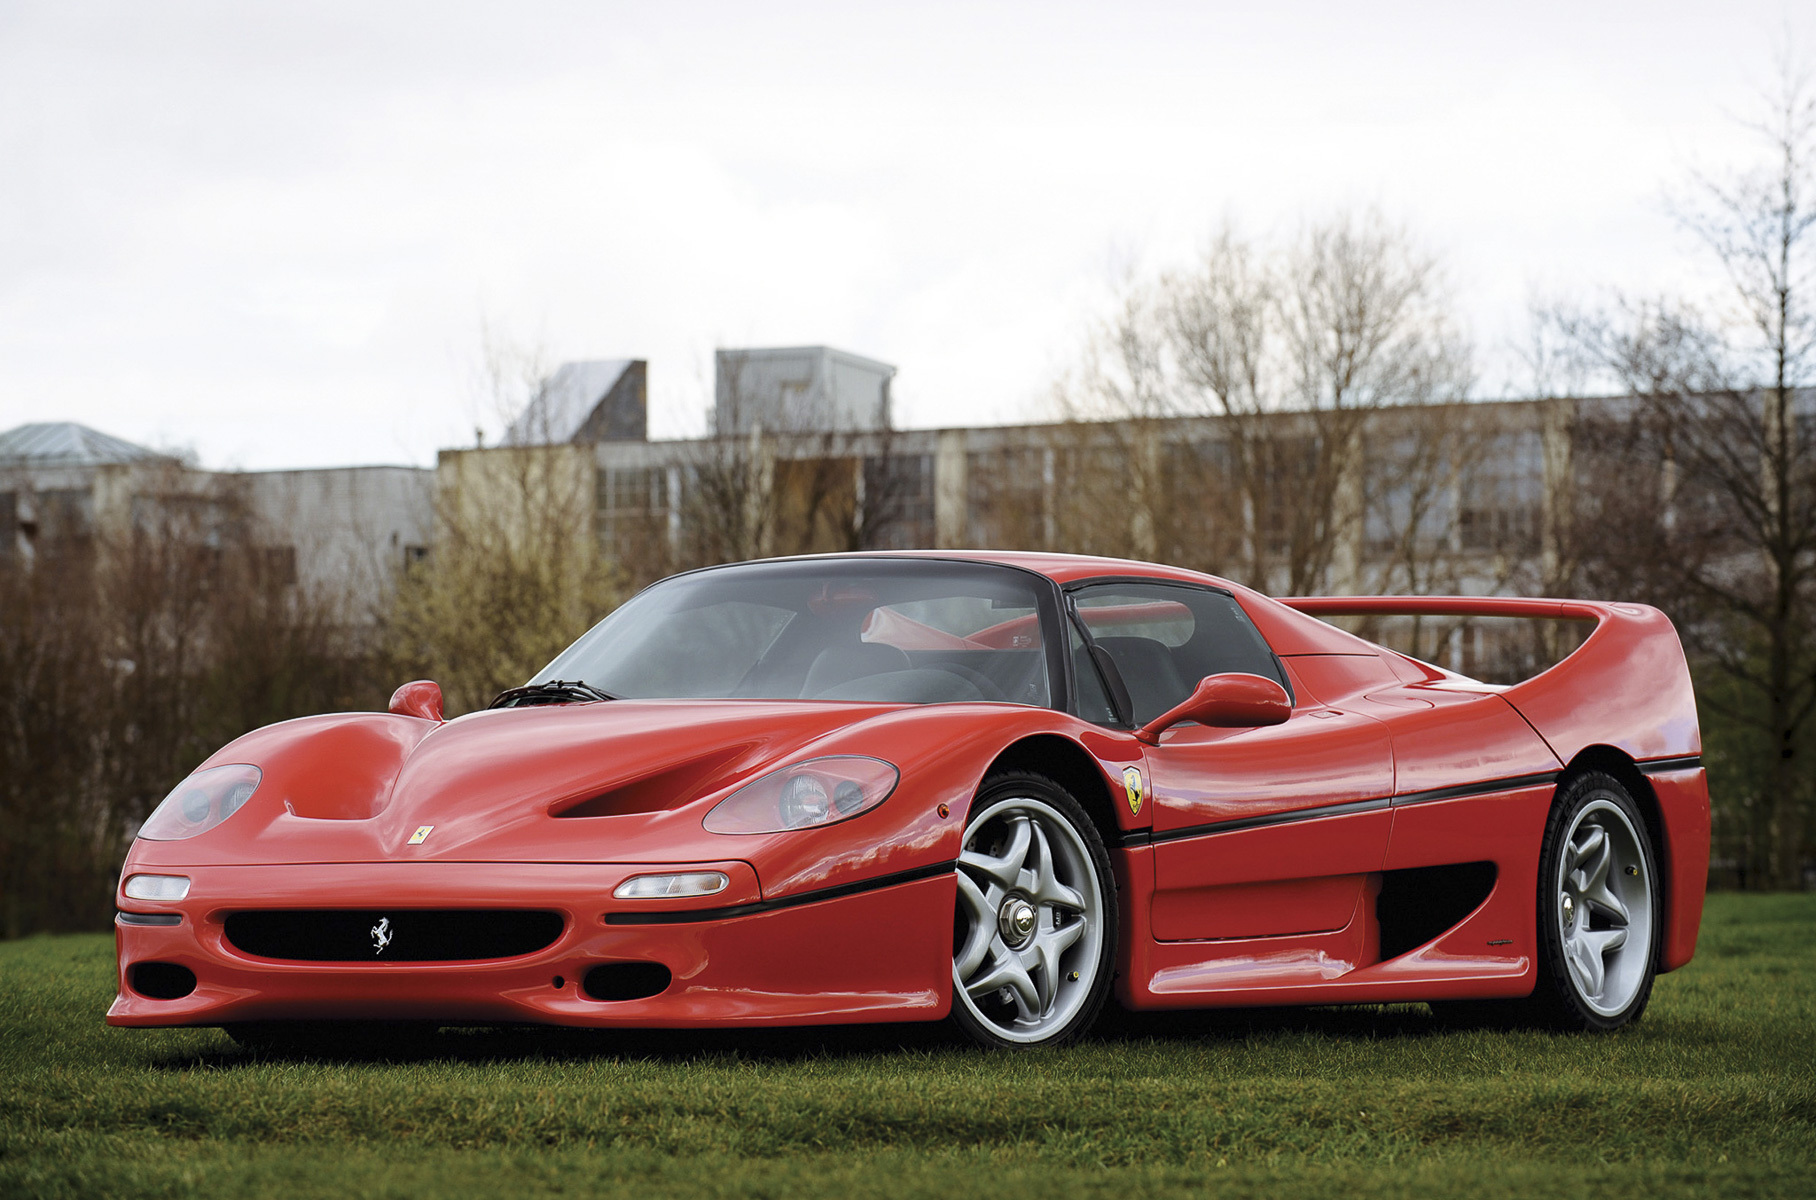 ### 5 место: Ferrari F50 F50 образца 1995 года Кларксон категорично назвал «худшим суперкаром за всю историю Ferrari». Модель была выпущена в количестве 349 экземпляров и, судя по тому, что один из автомобилей в 2020 году [пустили с молотка](https://motor.ru/news/second-f50-for-sale-10-02-2020.htm) за три миллиона долларов, далеко не все разделают позицию Джереми Кларксона.